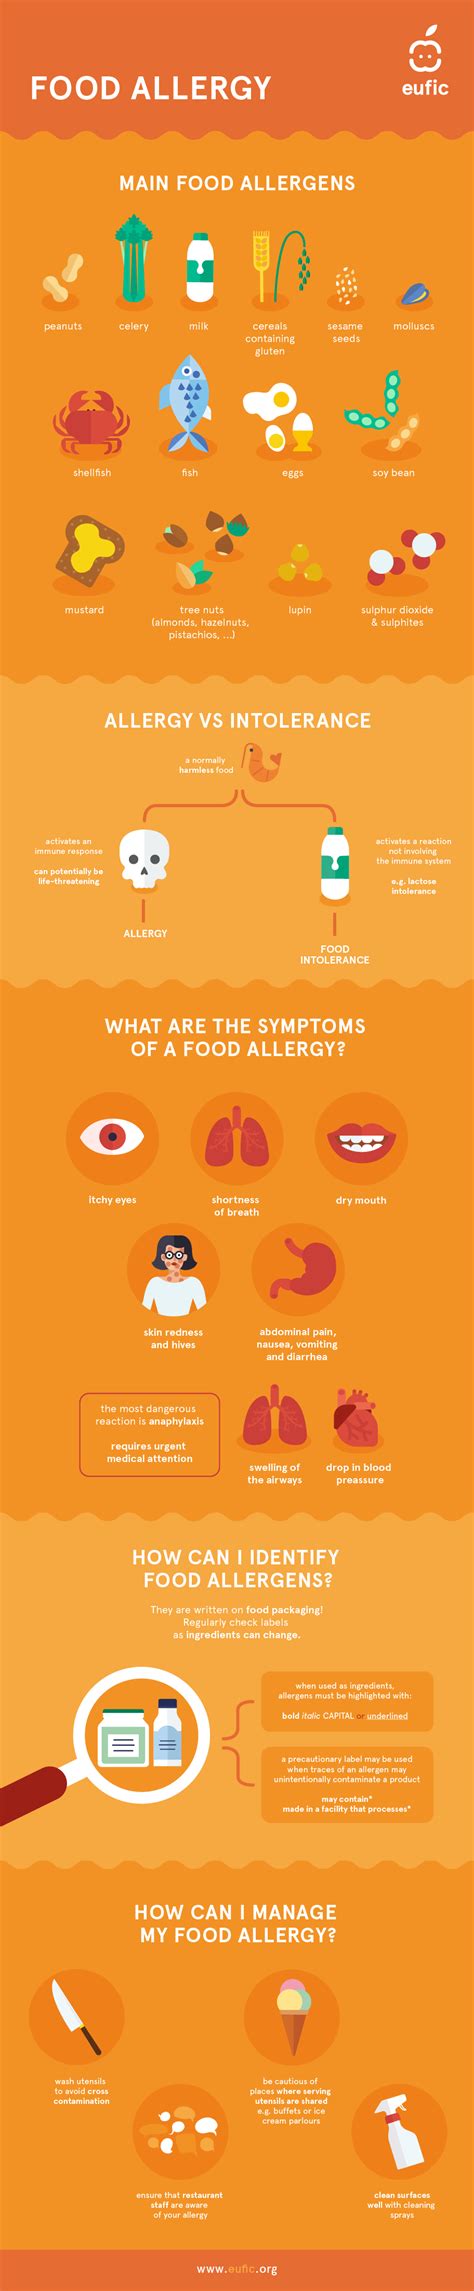 Food Allergen Infographic Eufic